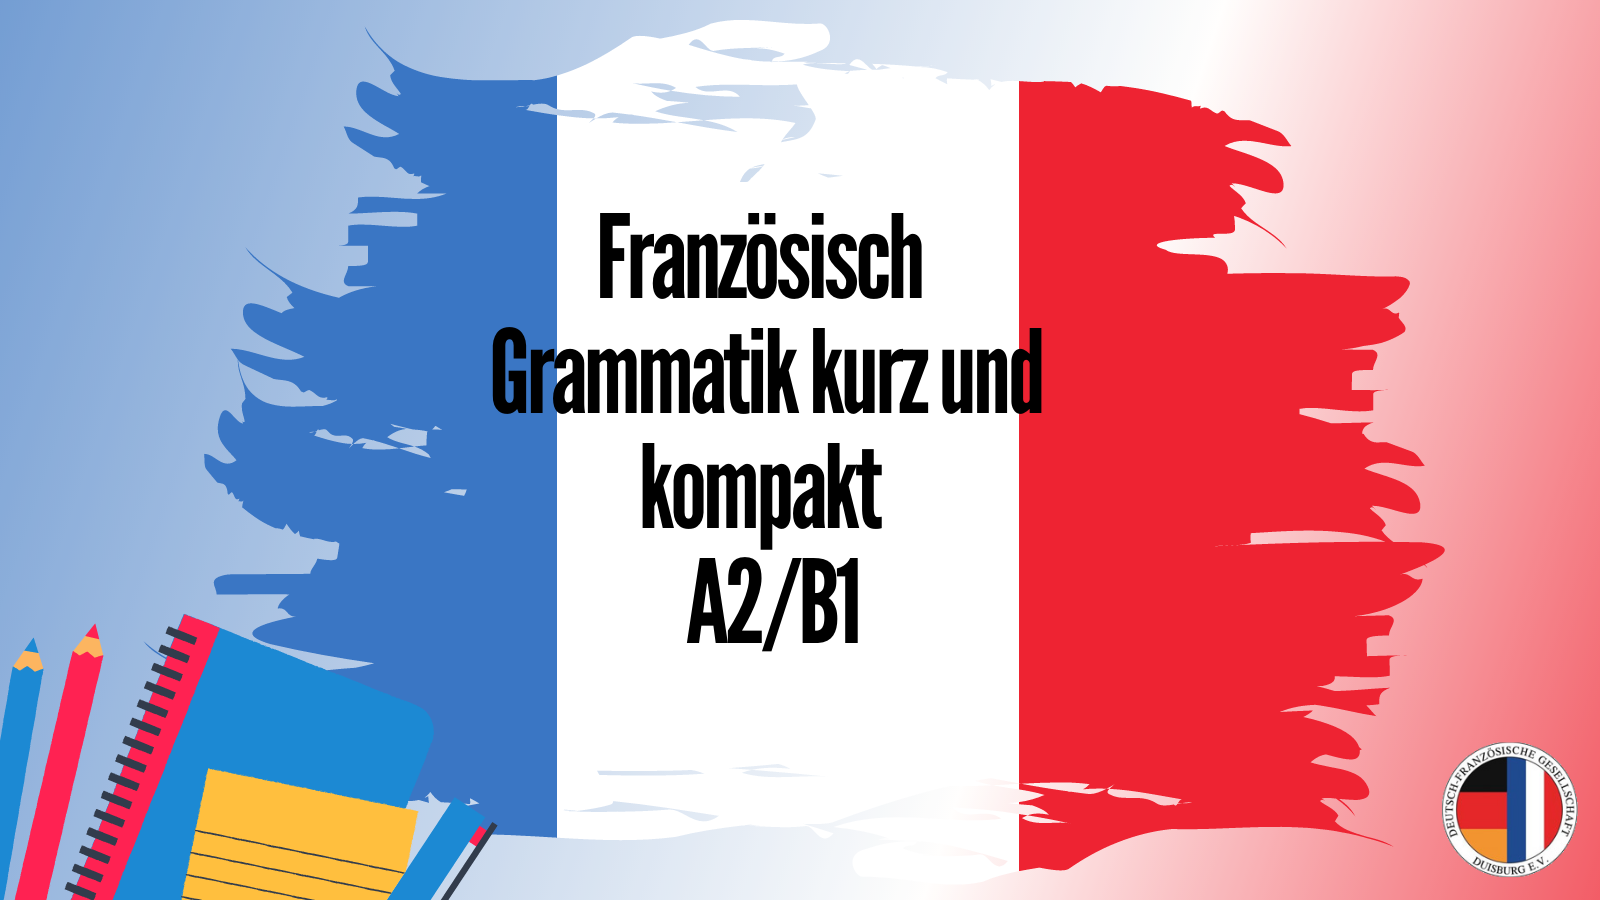 Französisch - Grammatik kurz und kompakt - A2/B1